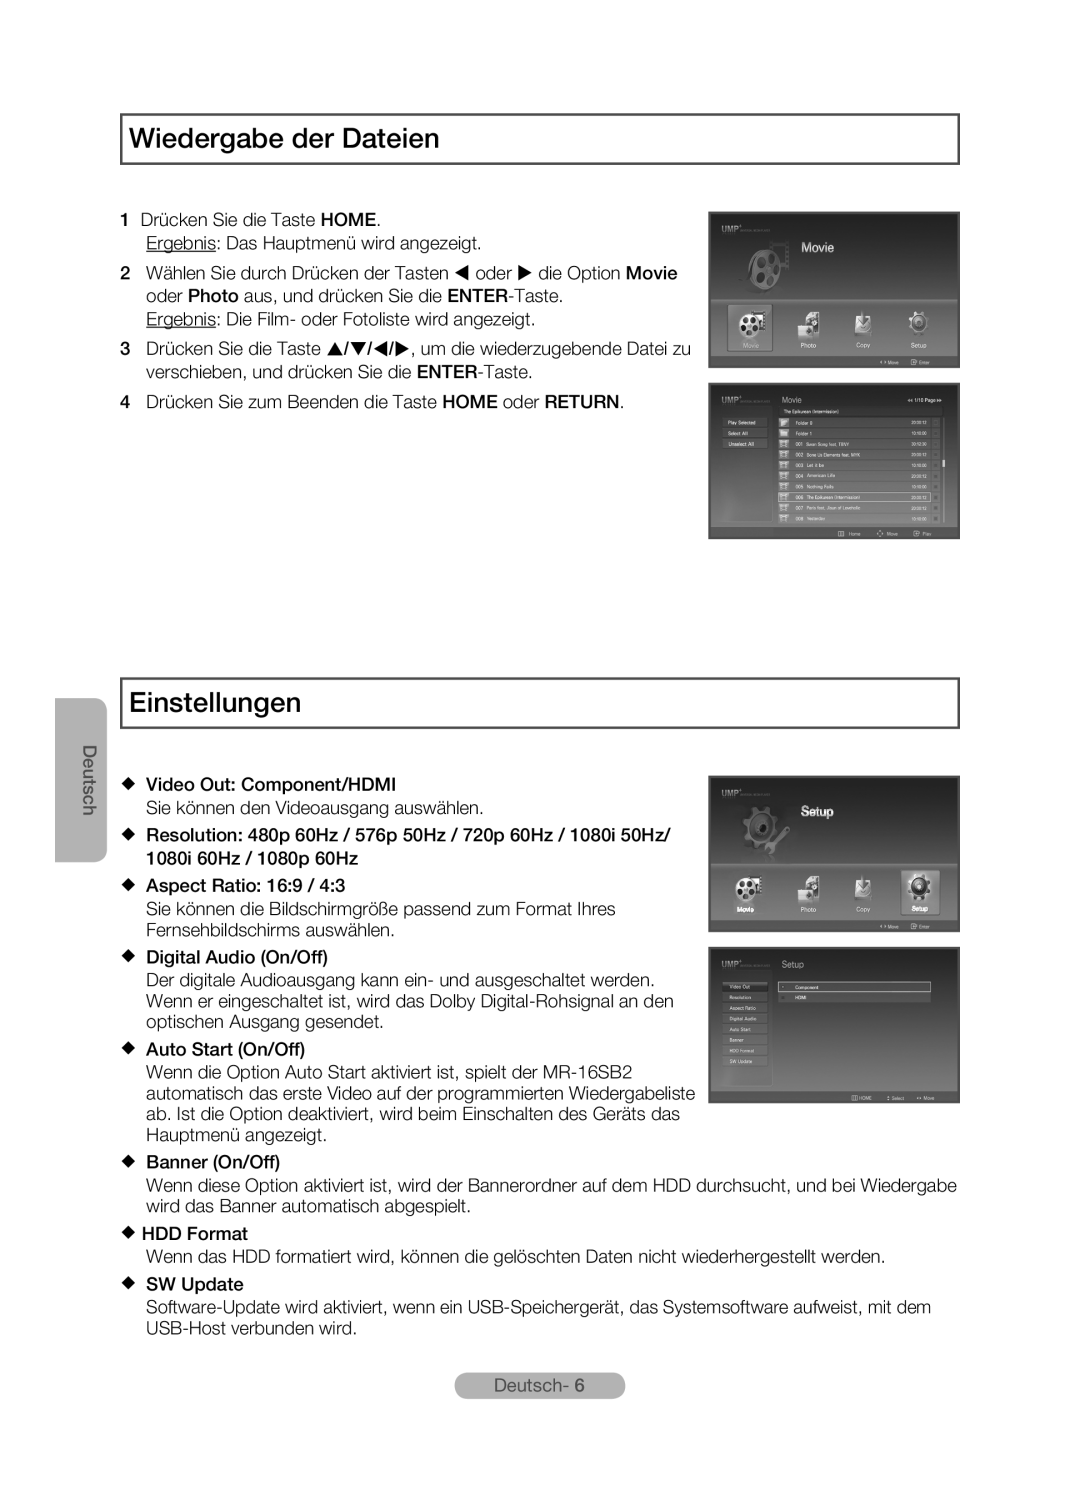 Samsung MR-16SB2 manual Wiedergabe der Dateien, Einstellungen, Deutsch 